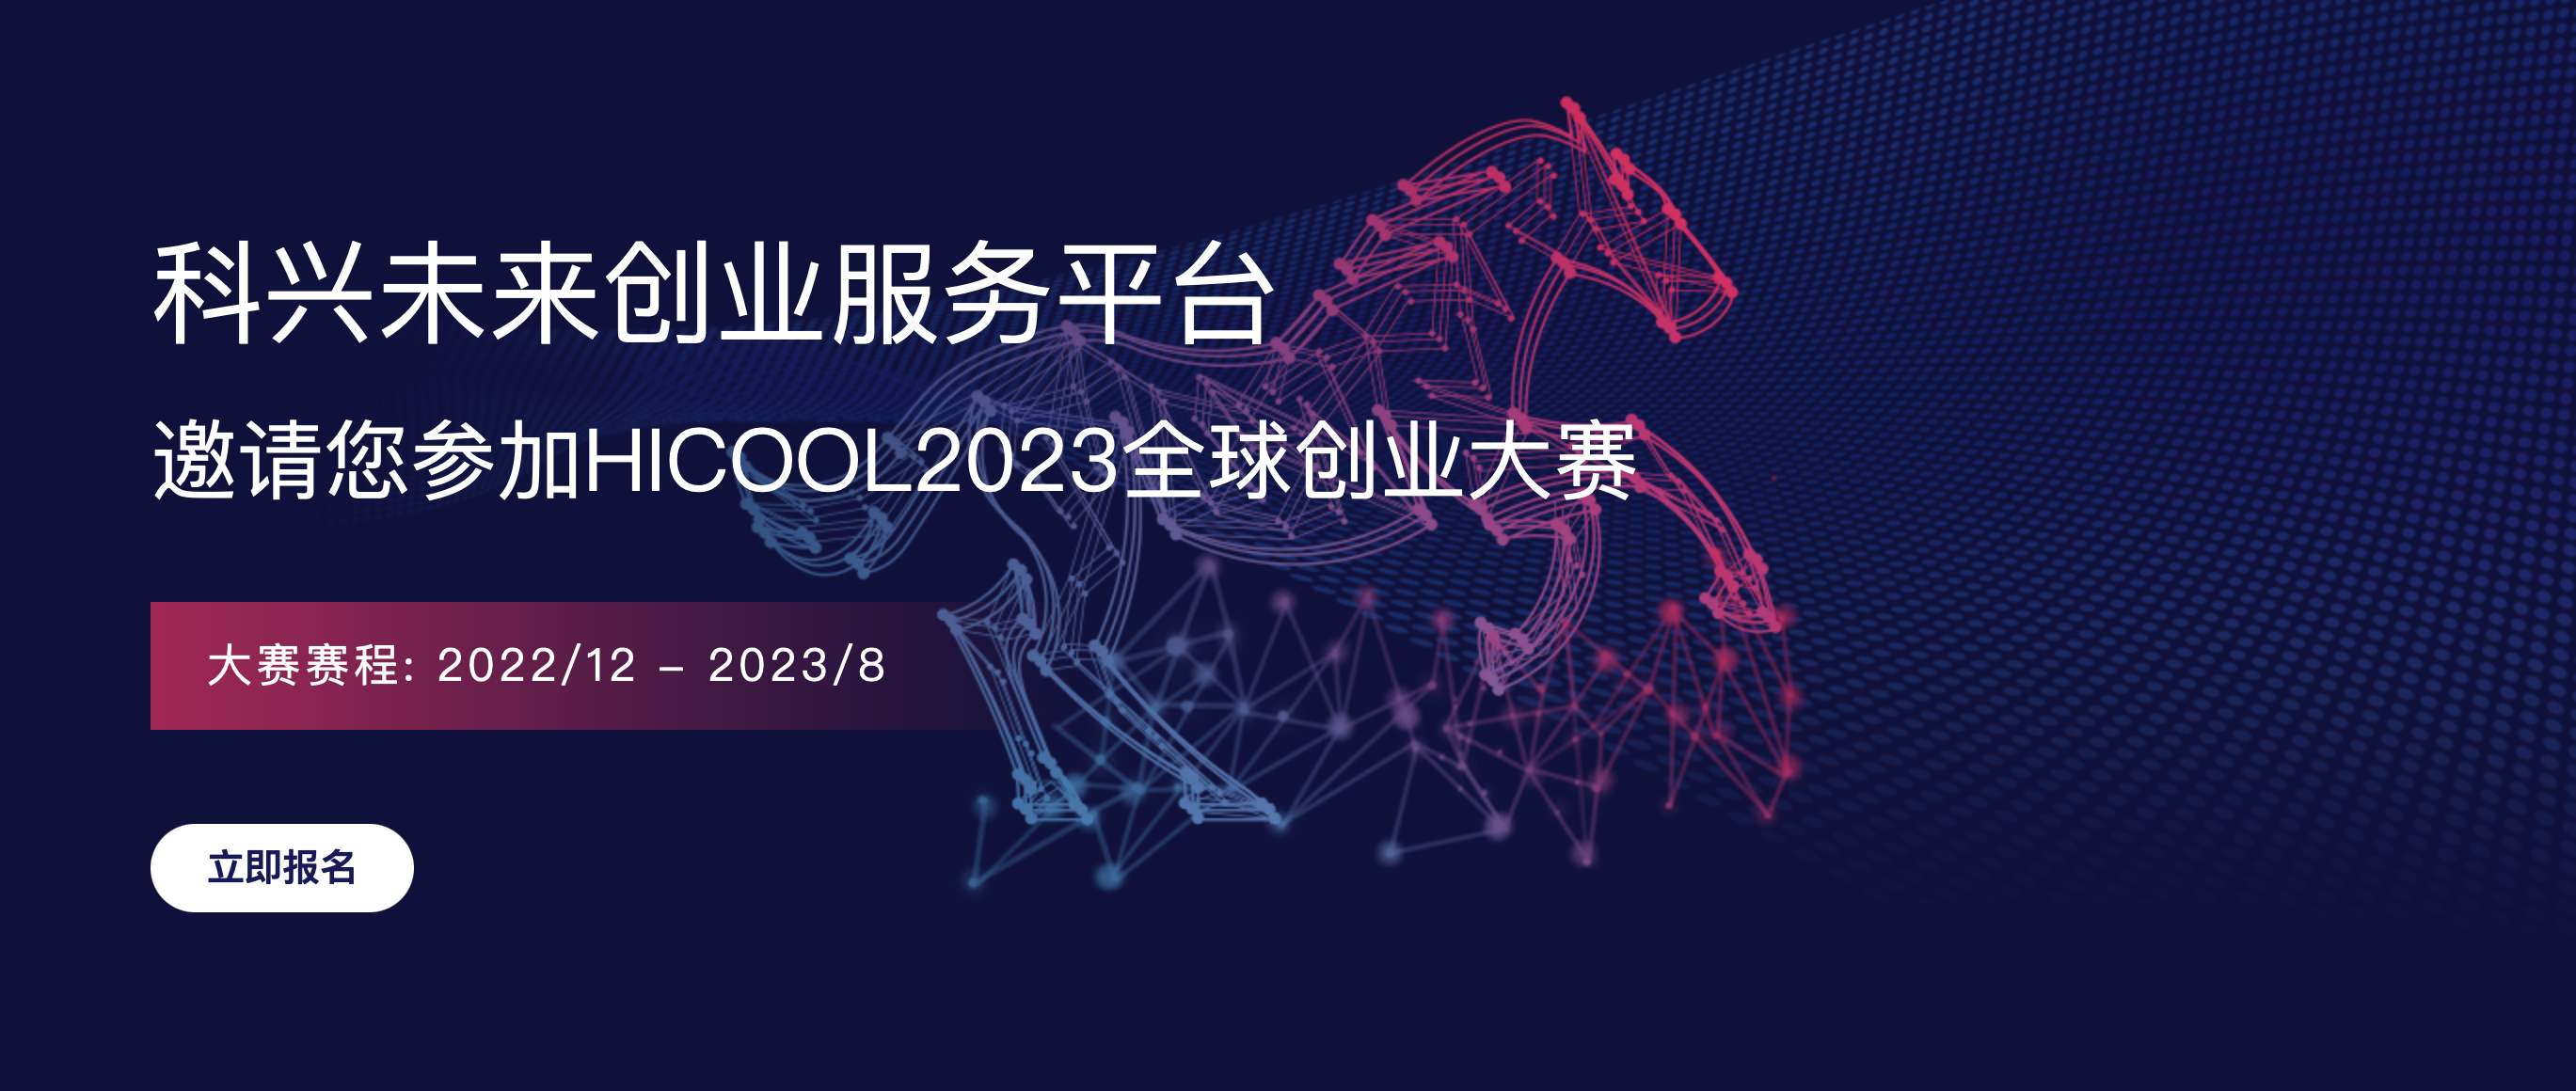 中国北京｜HICOOL 2023 全球创业大赛